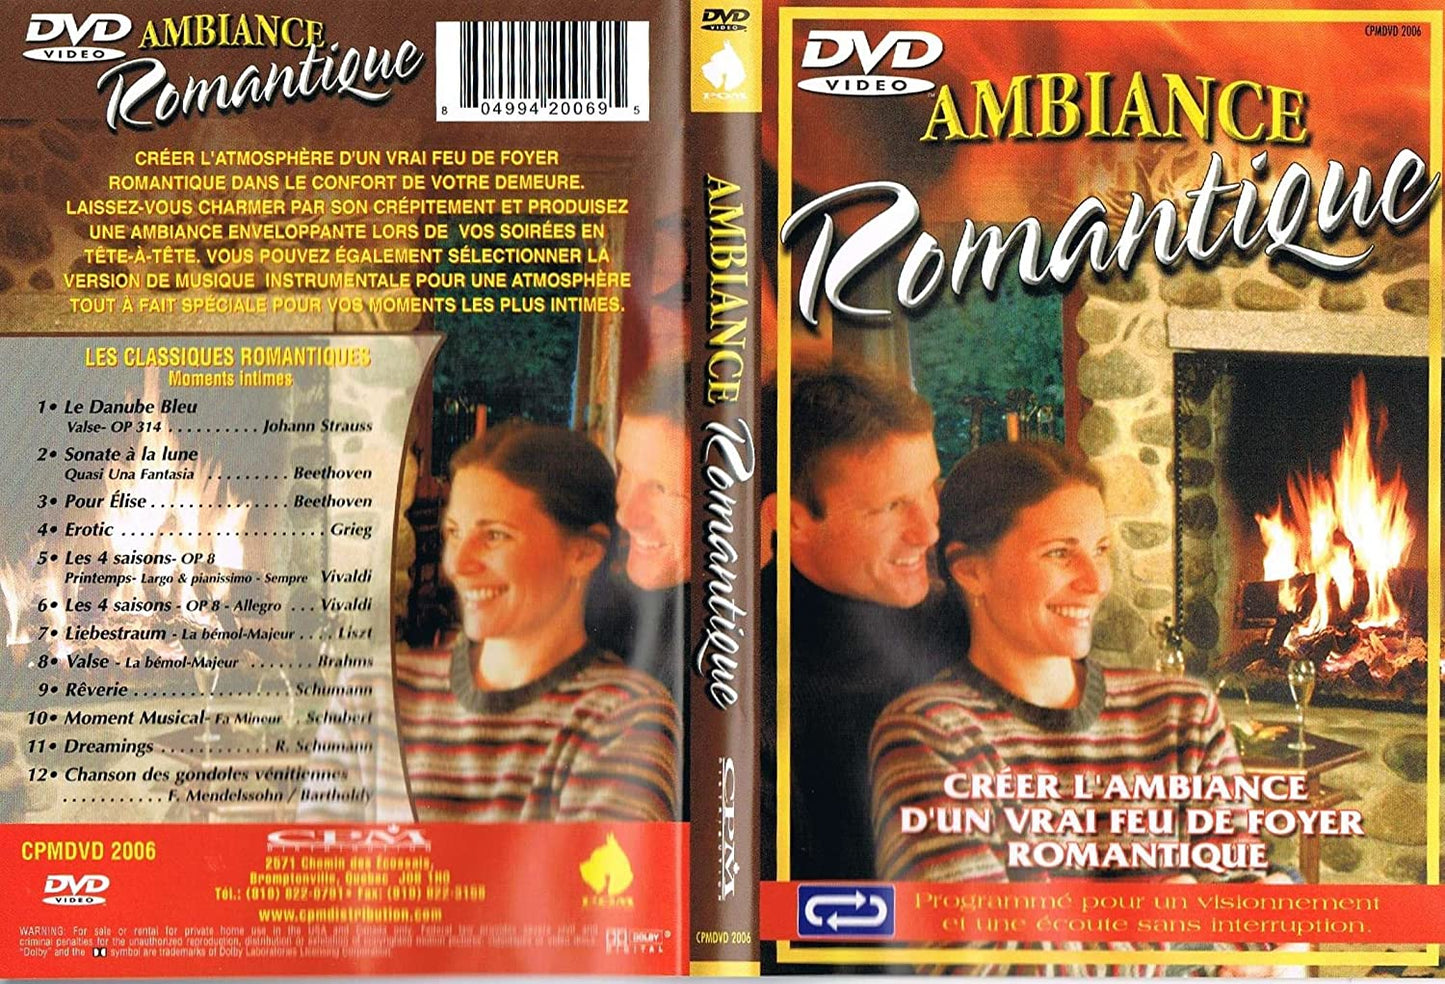 Ambiance Romantique (Créer L'ambiance d'un Vrai Feu de Foyer Romantique) [DVD]